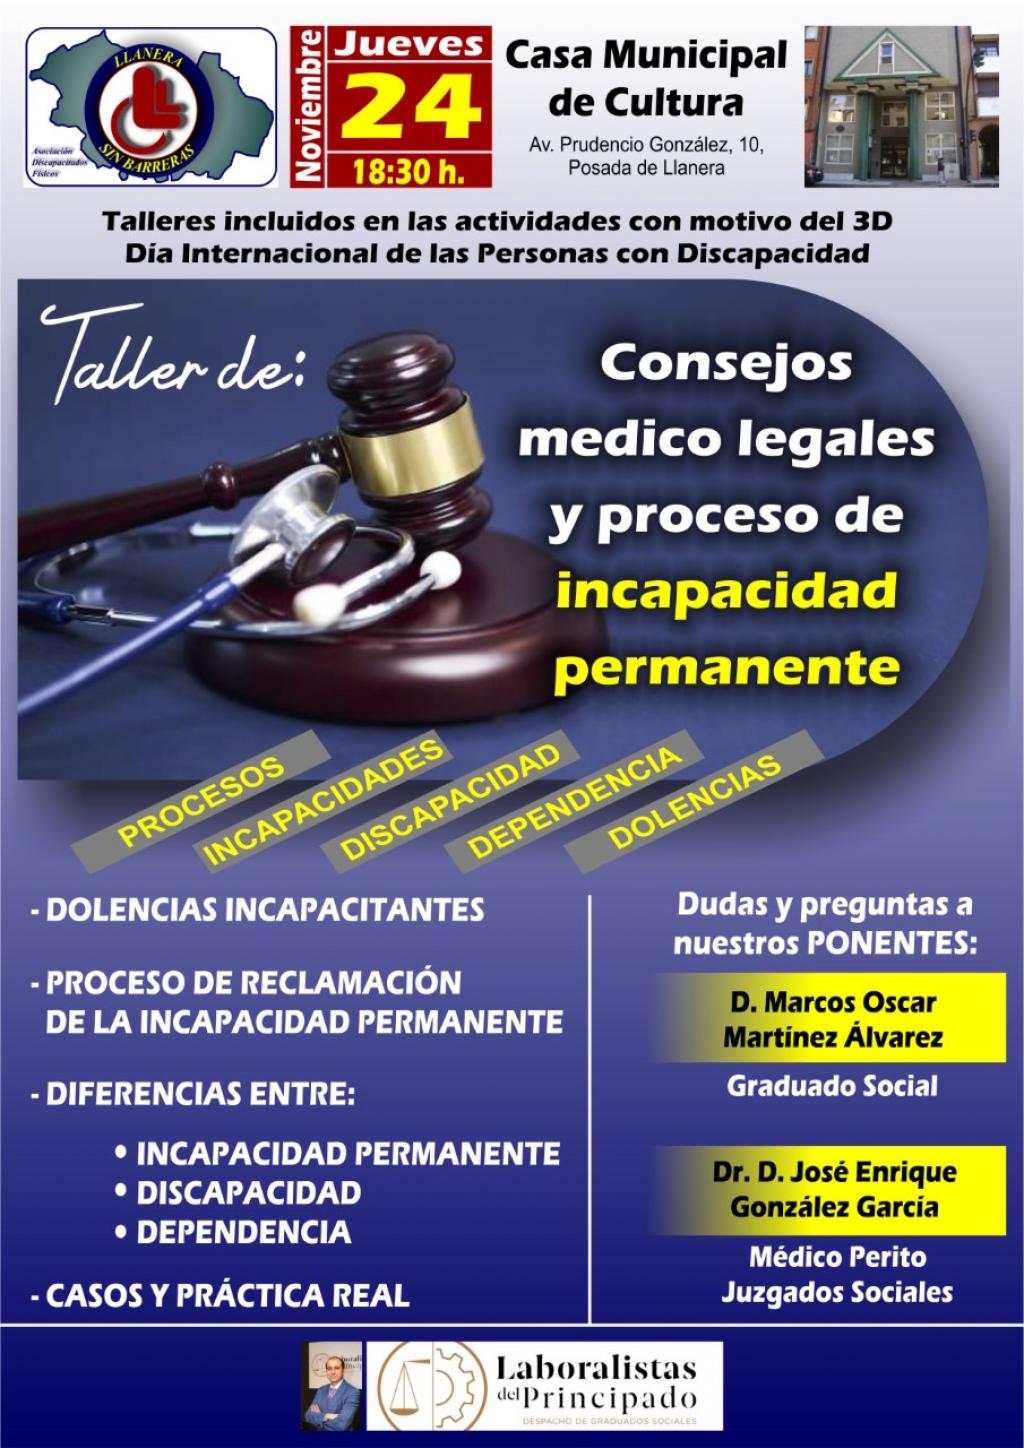 El Tapin - Llanera sin Barreras organiza el taller “Consejo médico legales y proceso de incapacidad permanente” el jueves 24 de noviembre en la Casa de Cultura de Posada